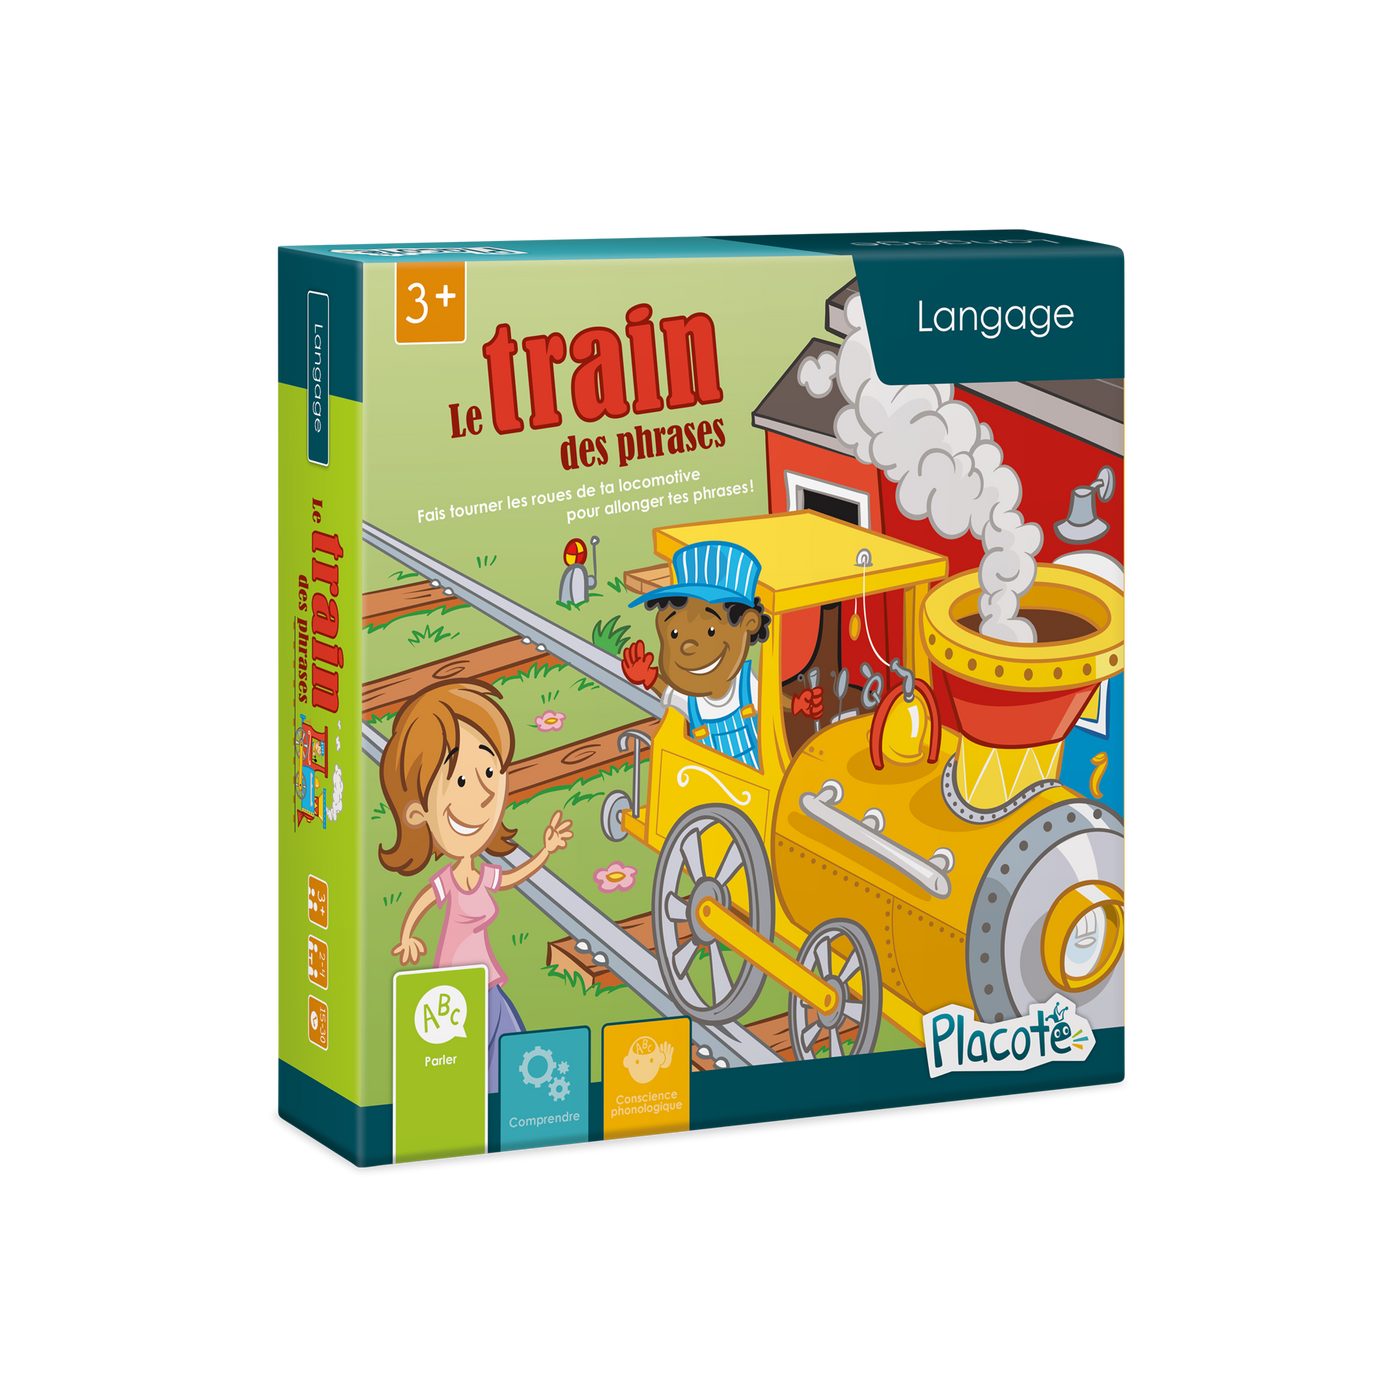 Le train des phrases - Devant de la boite du jeu, illustrant un garçon qui conduit une locomotive et qui salue une femme